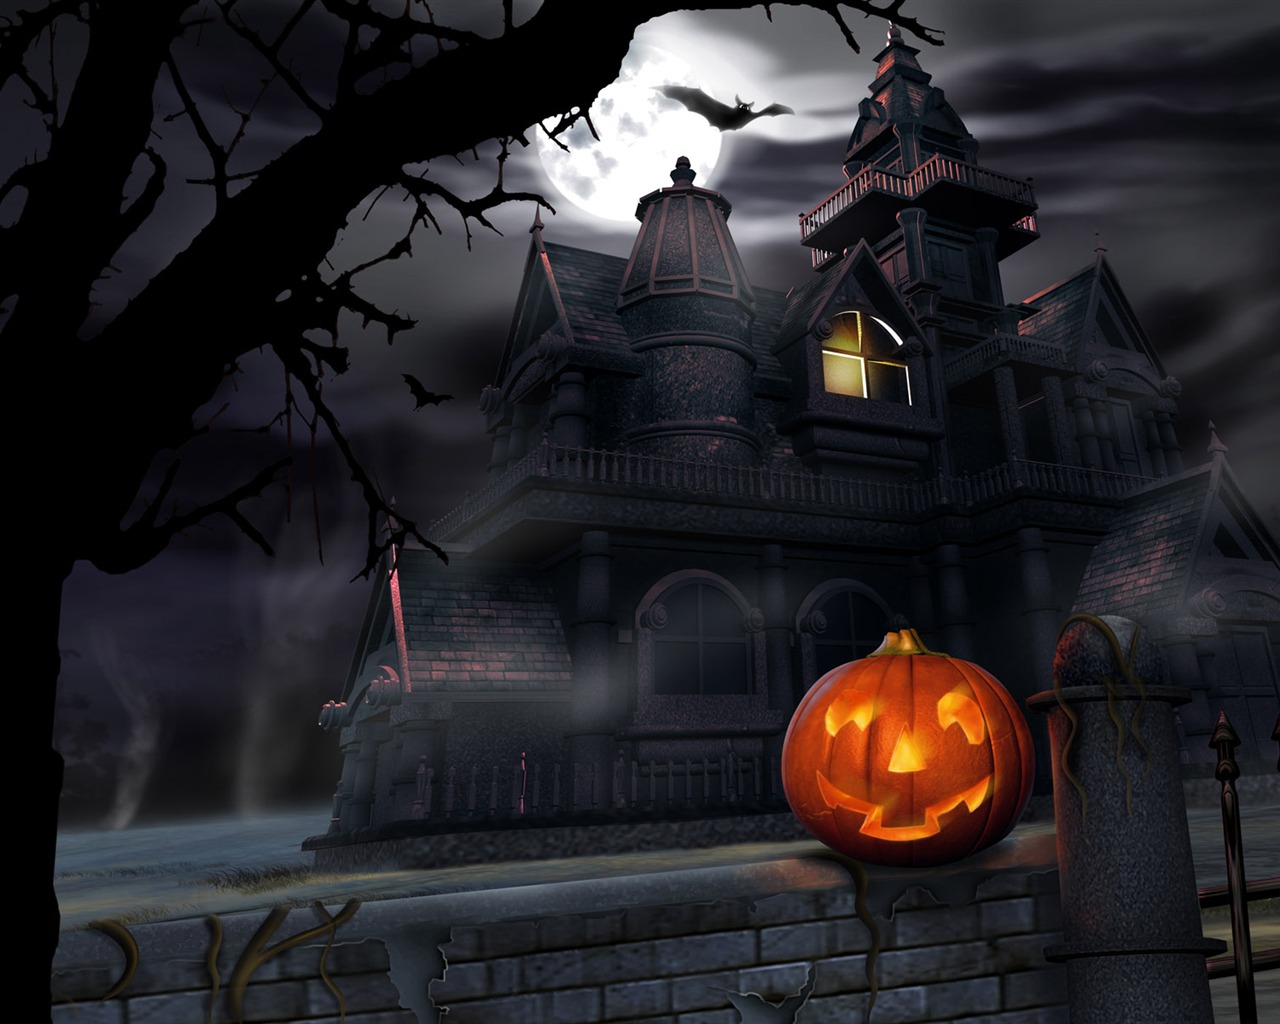 Fondos de Halloween temáticos (4) #3 - 1280x1024